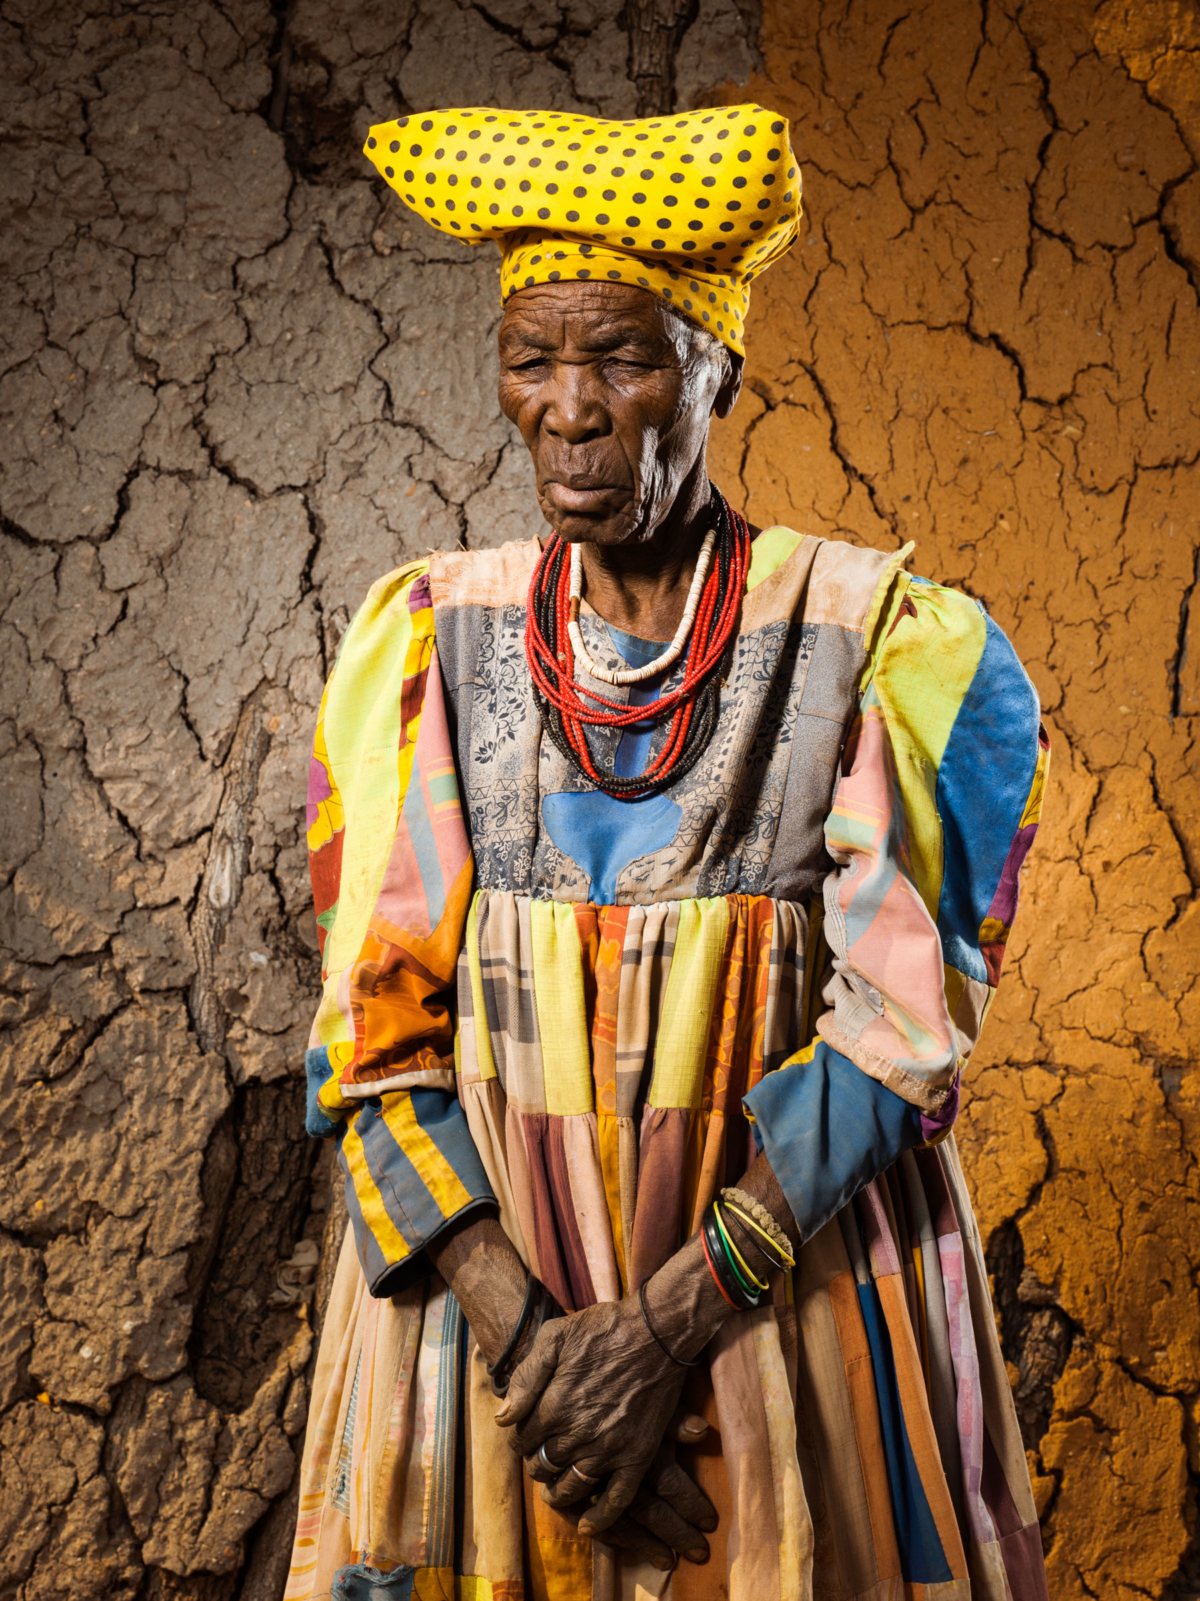 Hereros #28, Namibie 2017 Photographie Fine Art print sur papier Hahnemühle 80 x 100 cm, SG-HE28 ©STEPHAN GLADIEU